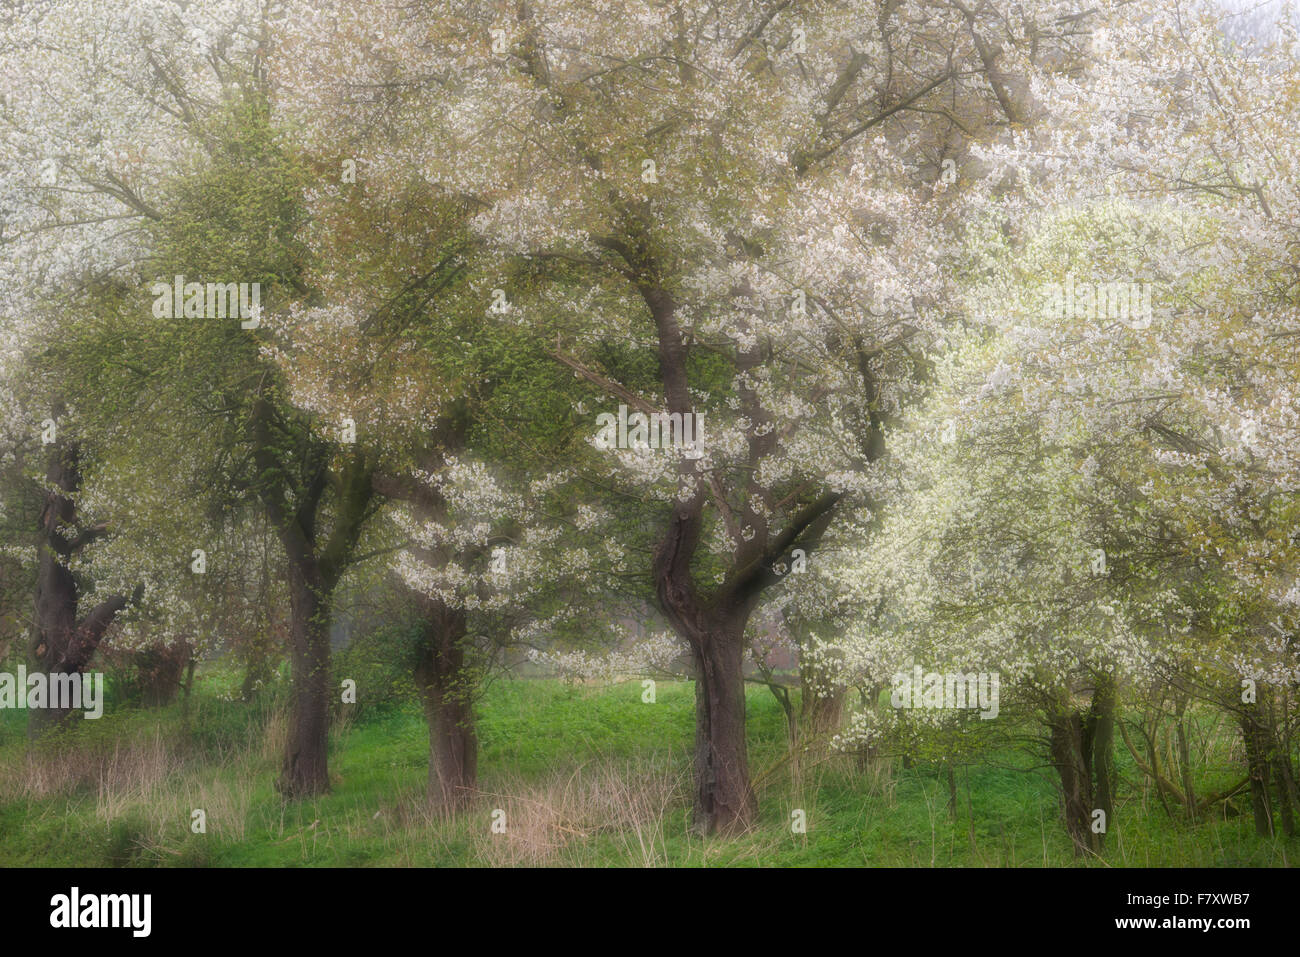 blooming cherry trees in bakum, vechta district, niedersachsen, germany Stock Photo